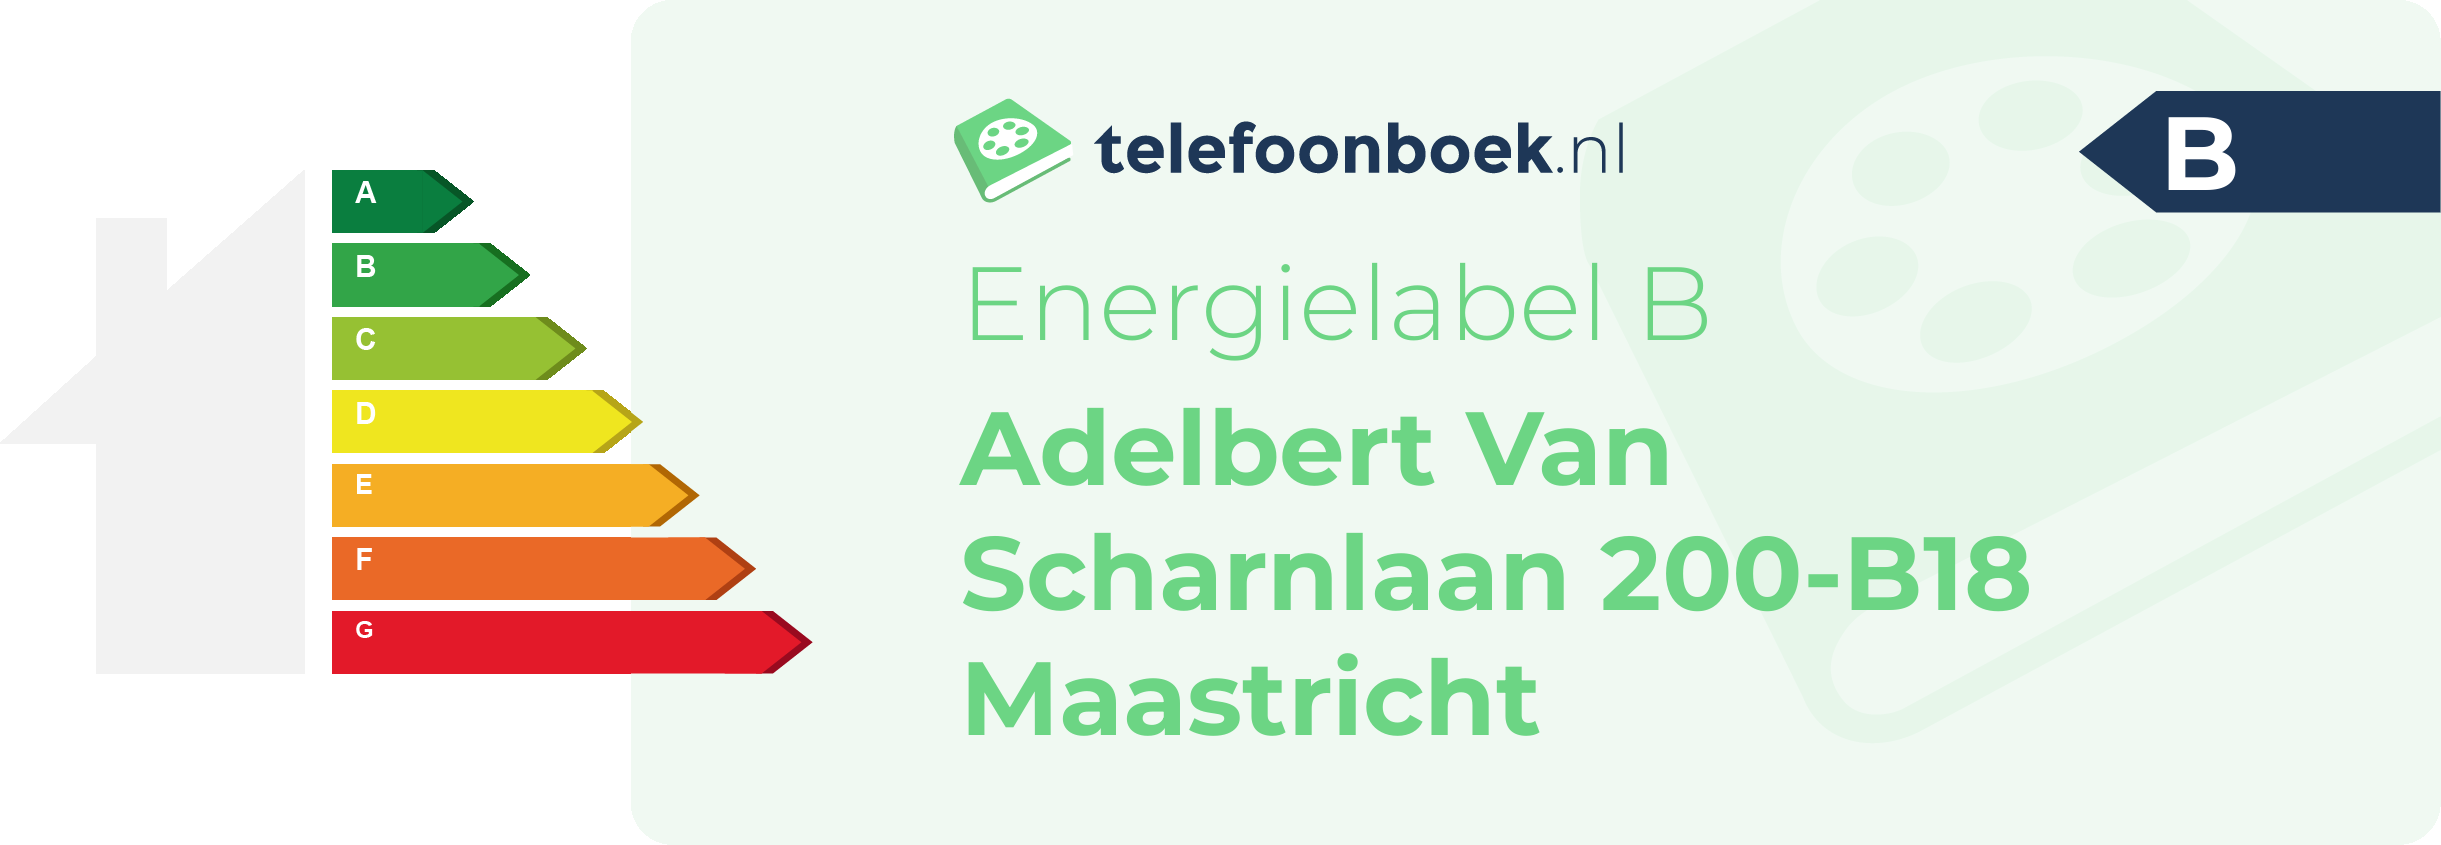 Energielabel Adelbert Van Scharnlaan 200-B18 Maastricht